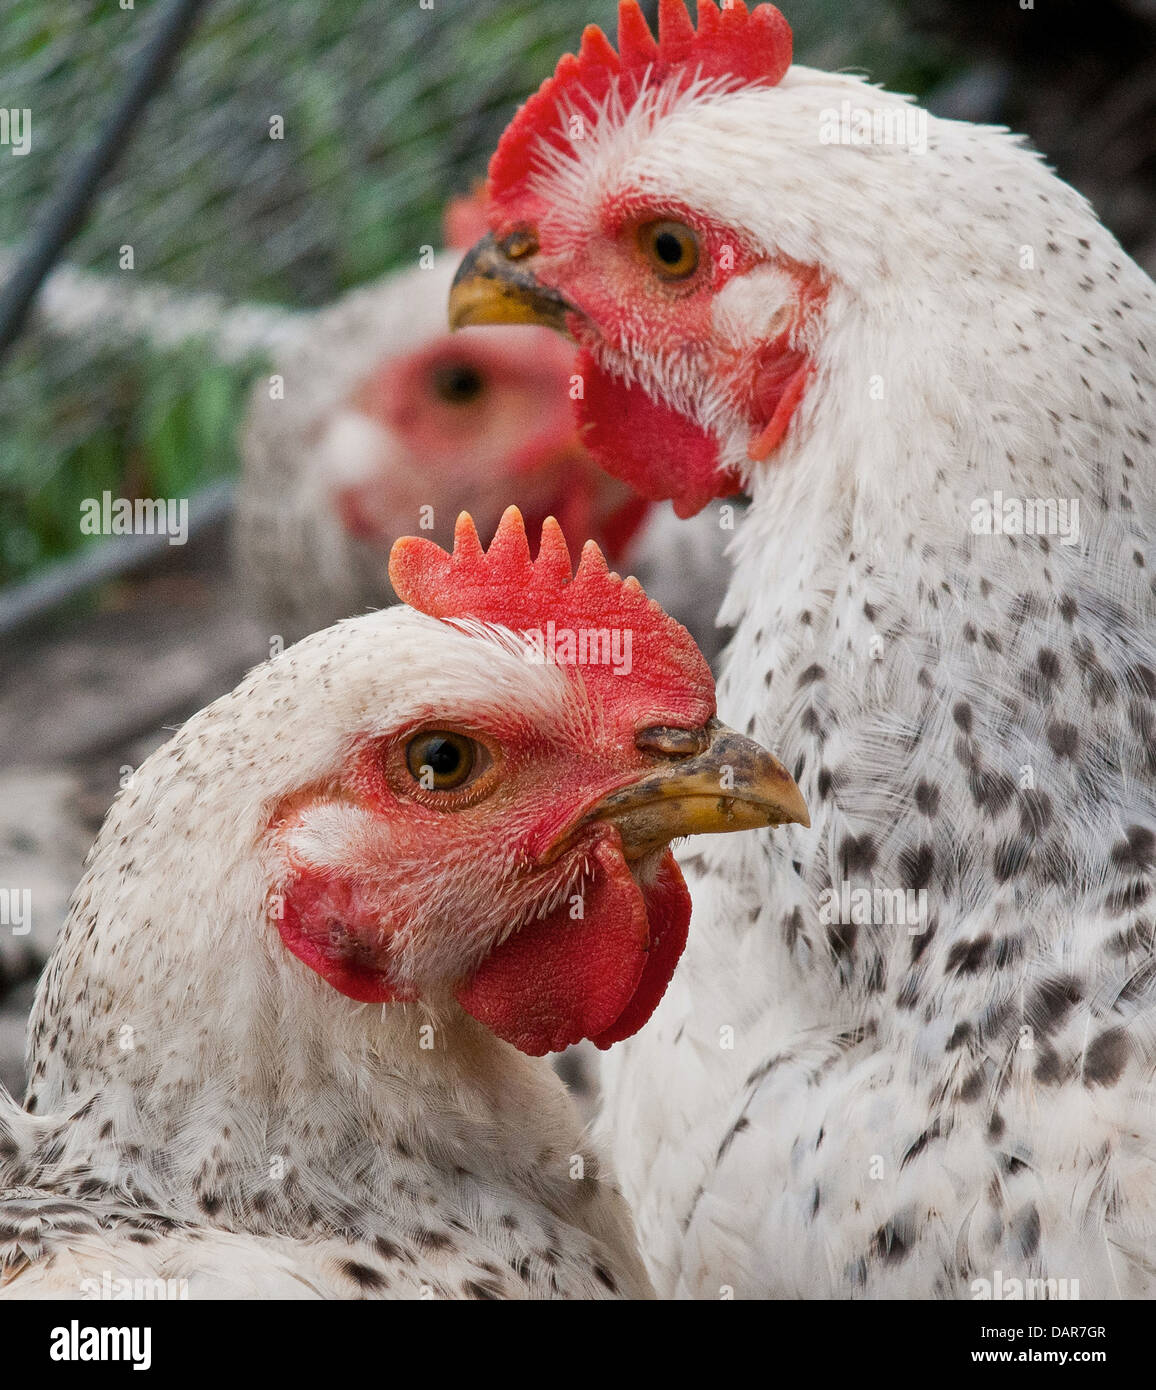 Ai polli da carne pascolare sui pascoli organico e vivere in penne che li proteggono dai predatori, la luce diretta del sole e del vento a Nick fattoria organica in luglio 12, 2013 in Adamstown, MD. Foto Stock